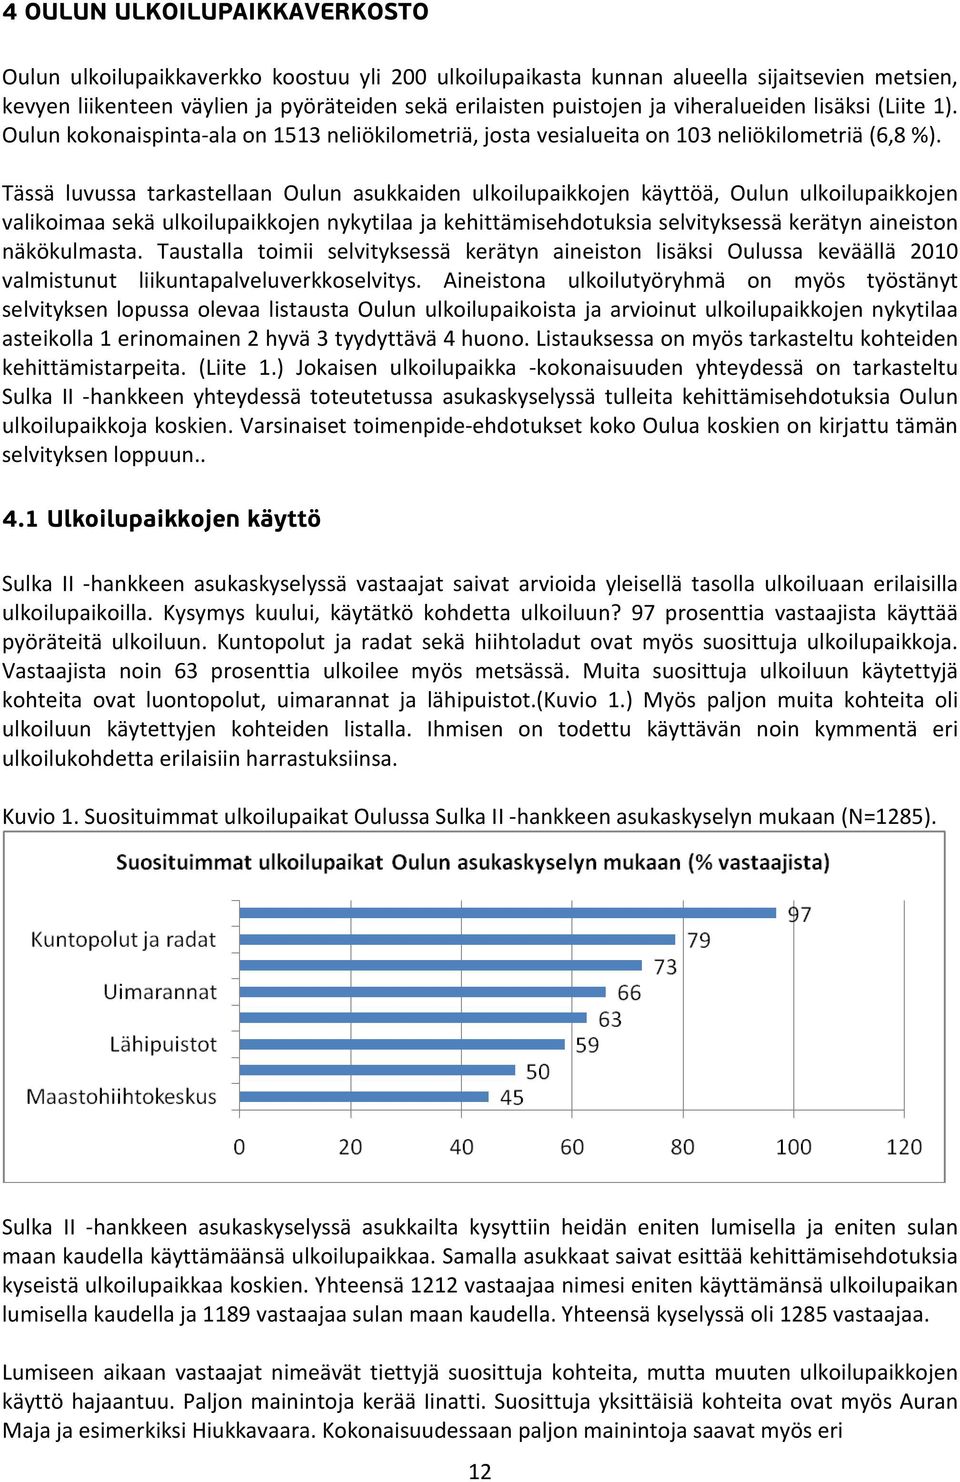 Tässä luvussa tarkastellaan Oulun asukkaiden ulkoilupaikkojen käyttöä, Oulun ulkoilupaikkojen valikoimaa sekä ulkoilupaikkojen nykytilaa ja kehittämisehdotuksia selvityksessä kerätyn aineiston